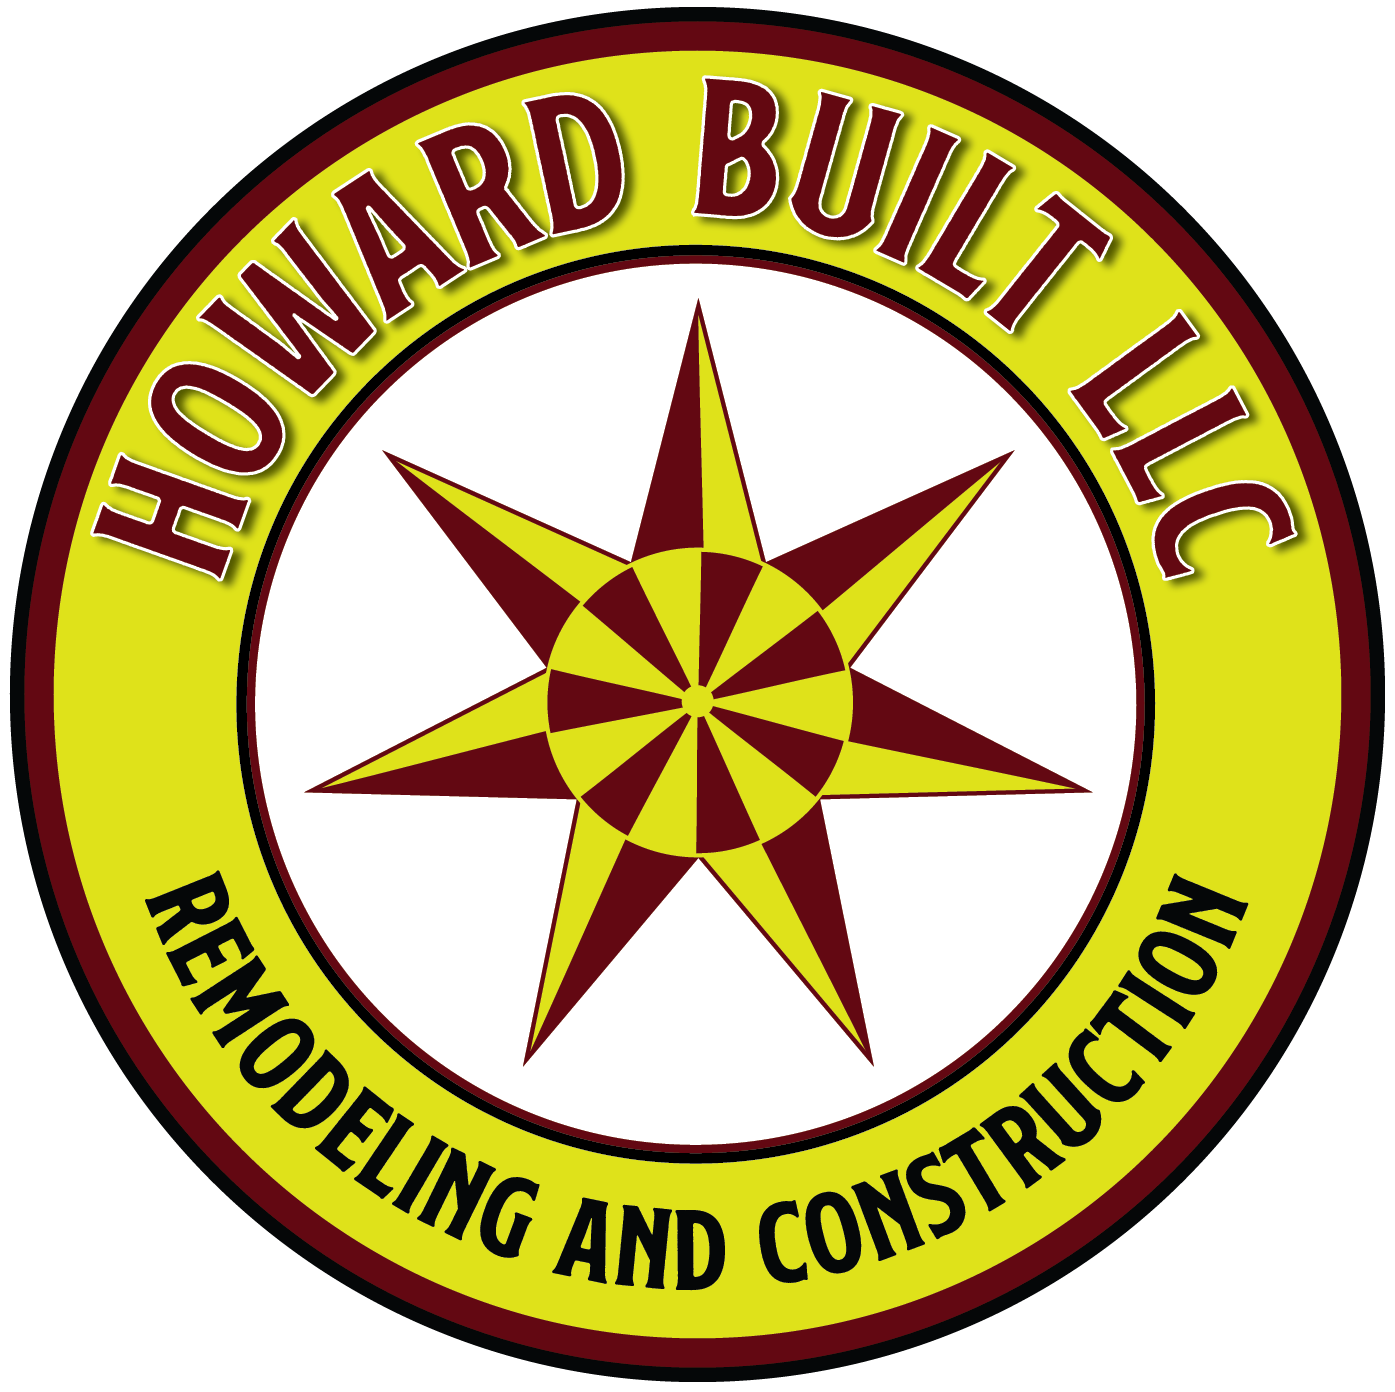 Howard Built